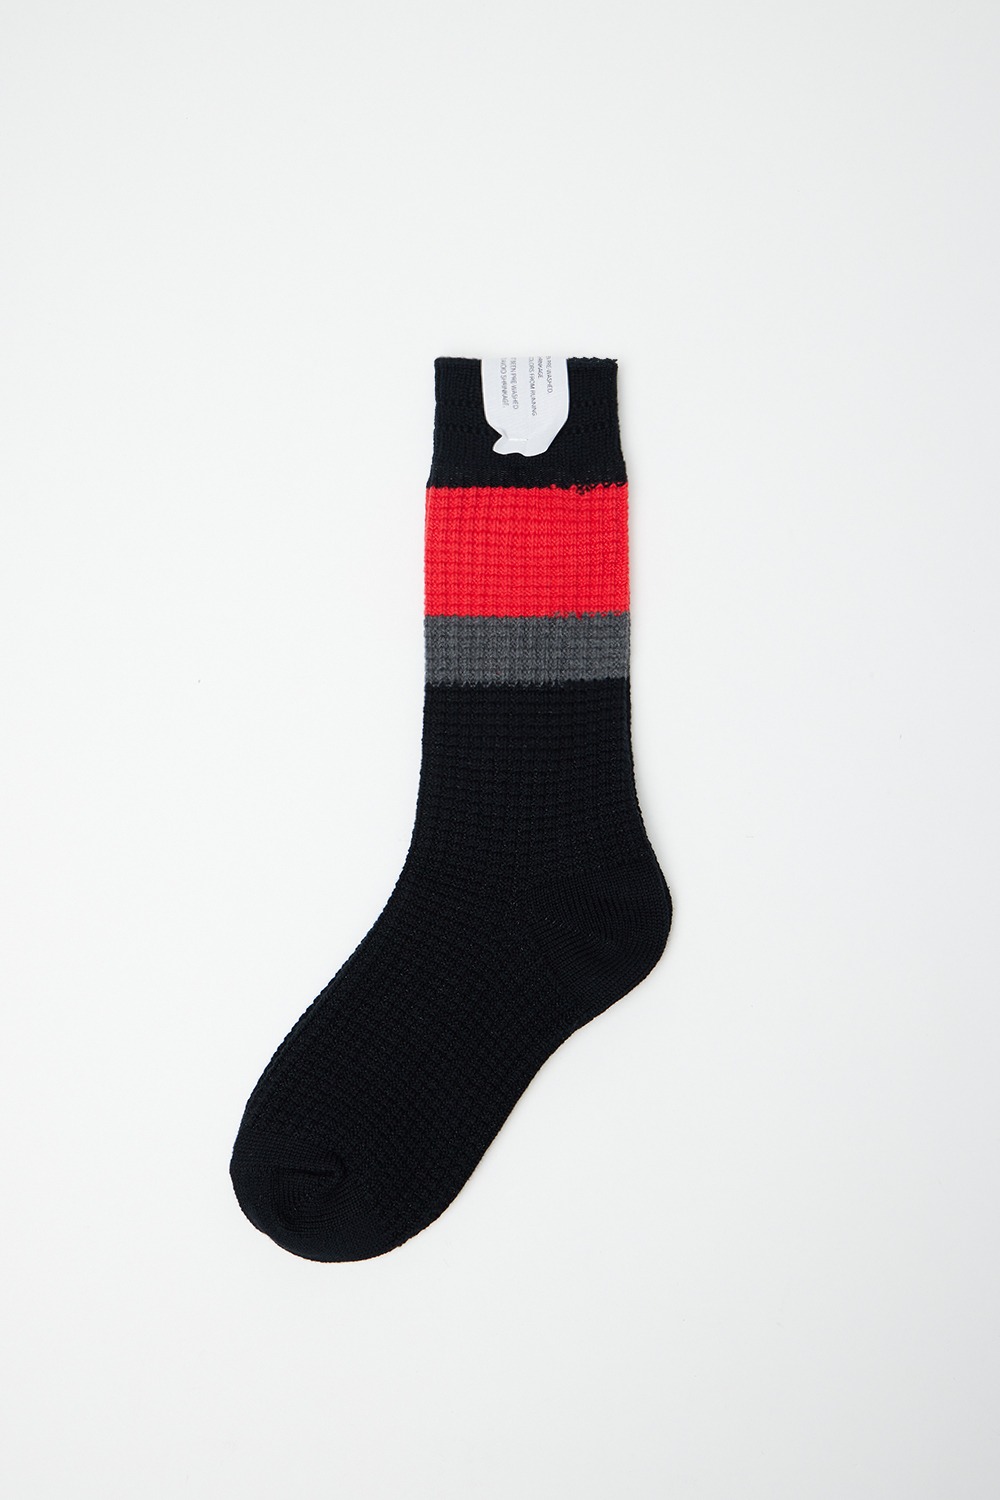 UH0596 Socks - Black